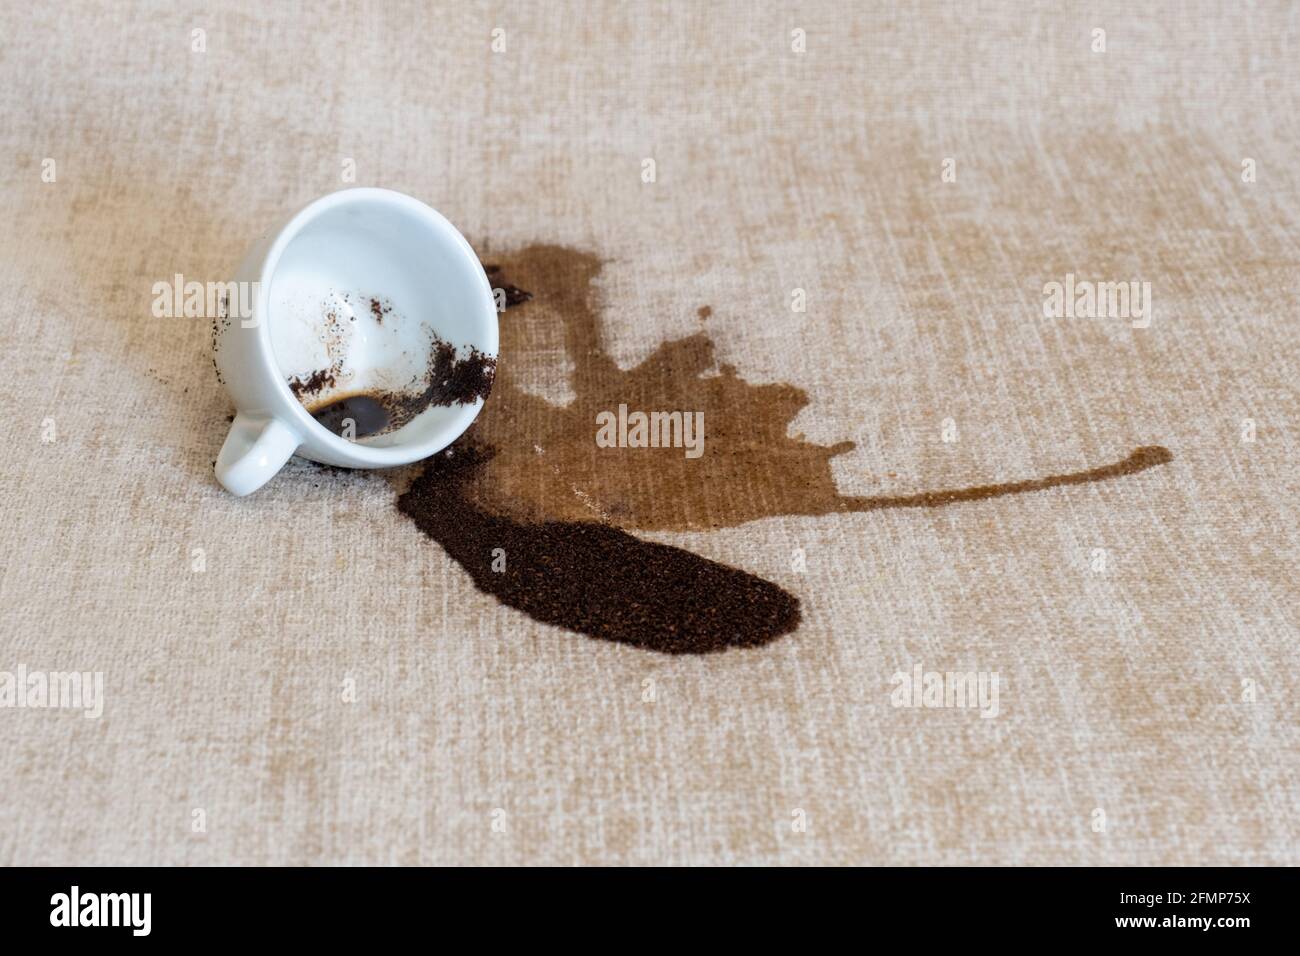 Tasse de café renversée sur le canapé avec des taches sales Photo Stock -  Alamy